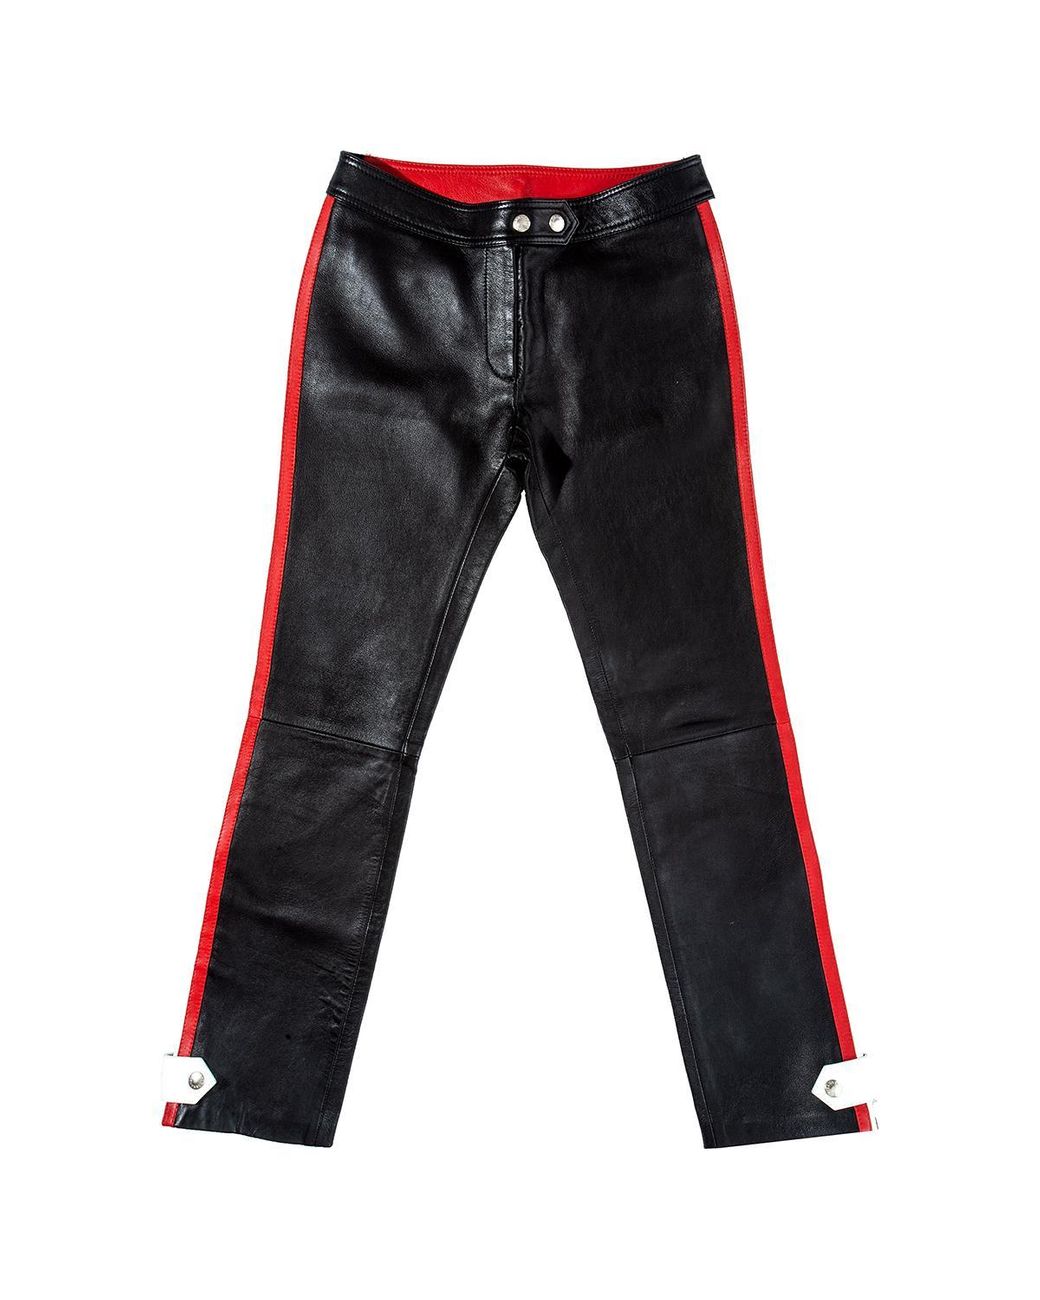 Dolce & Gabbana Leather Biker Pants, Ss 2001 in Black - Lyst